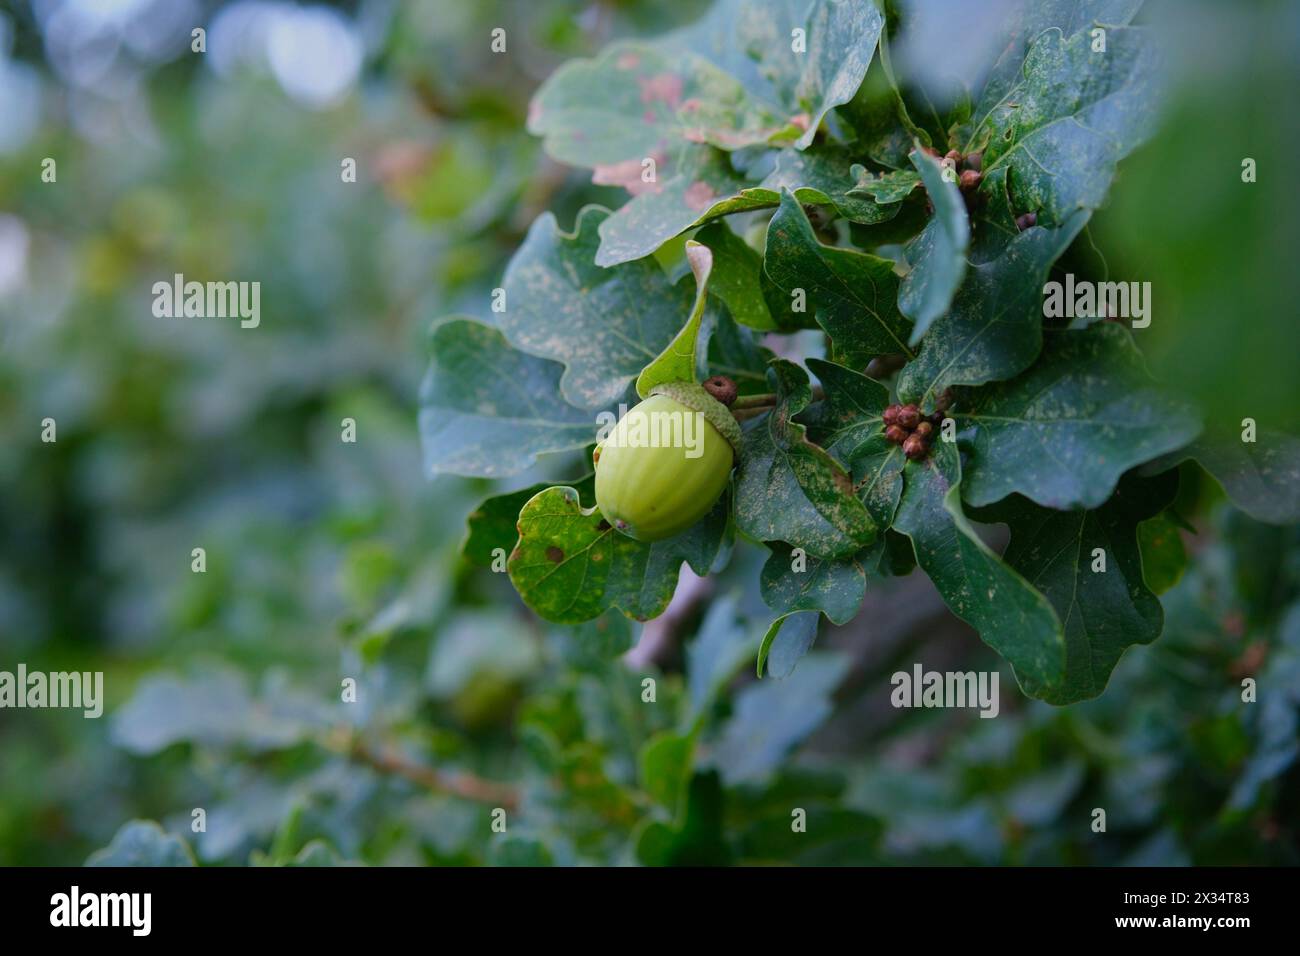 Gemma di smeraldo della foresta: Un primo piano di un granturco verde dà vita allo splendore della natura. La ghianda verde cresce su un albero di quercia. Foto Stock